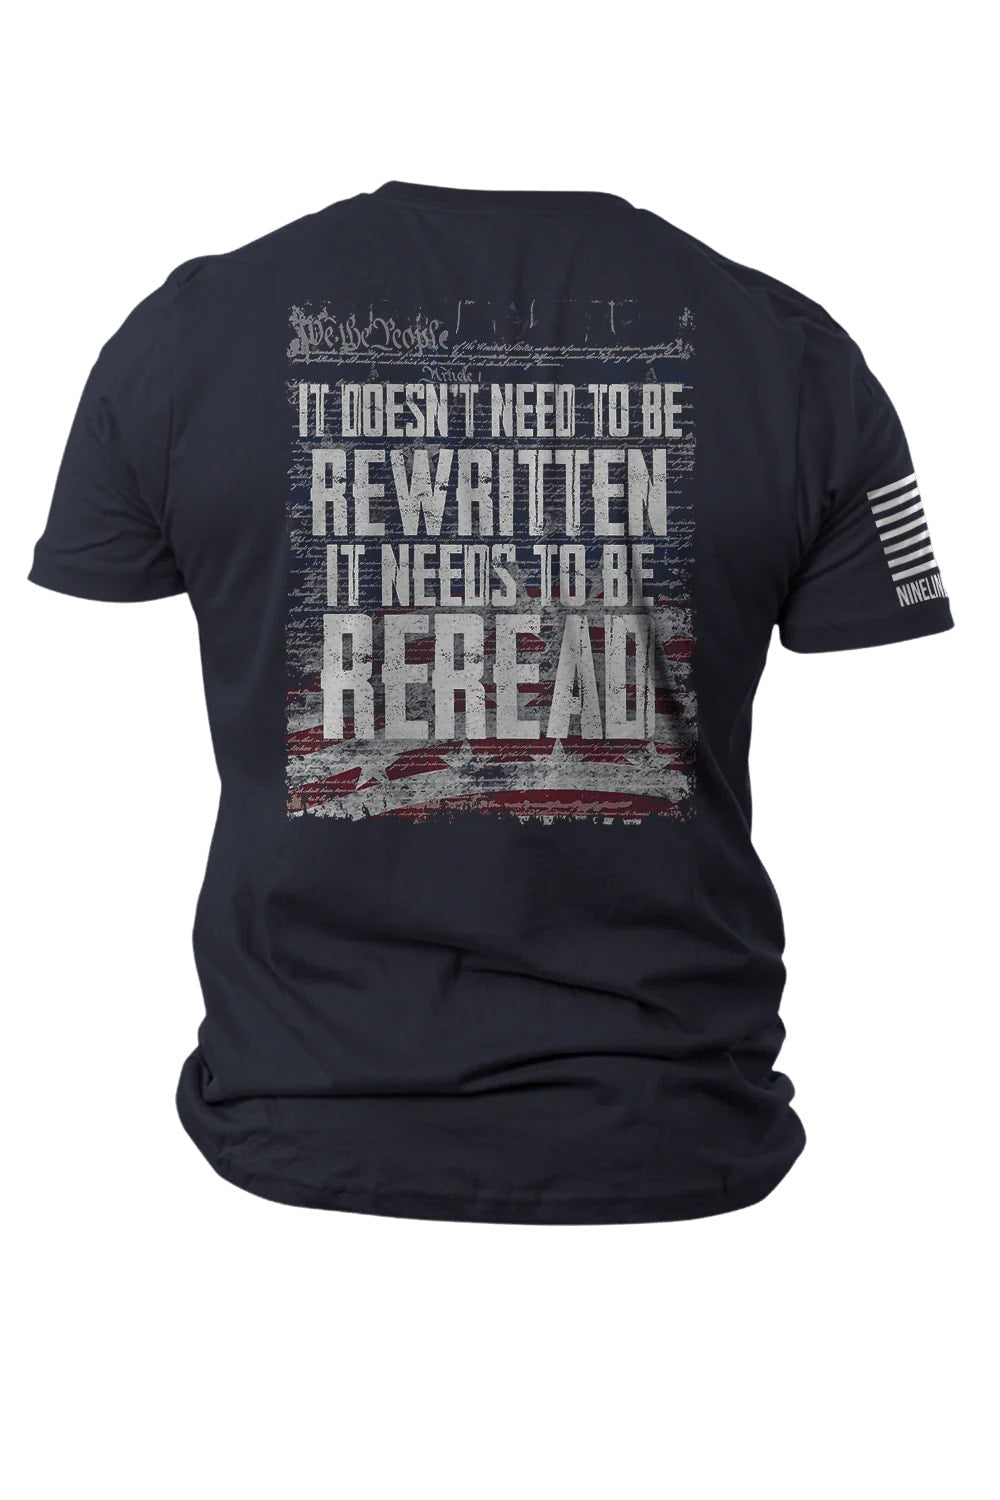 T-Shirt - REREAD - Not ReWritten Navy